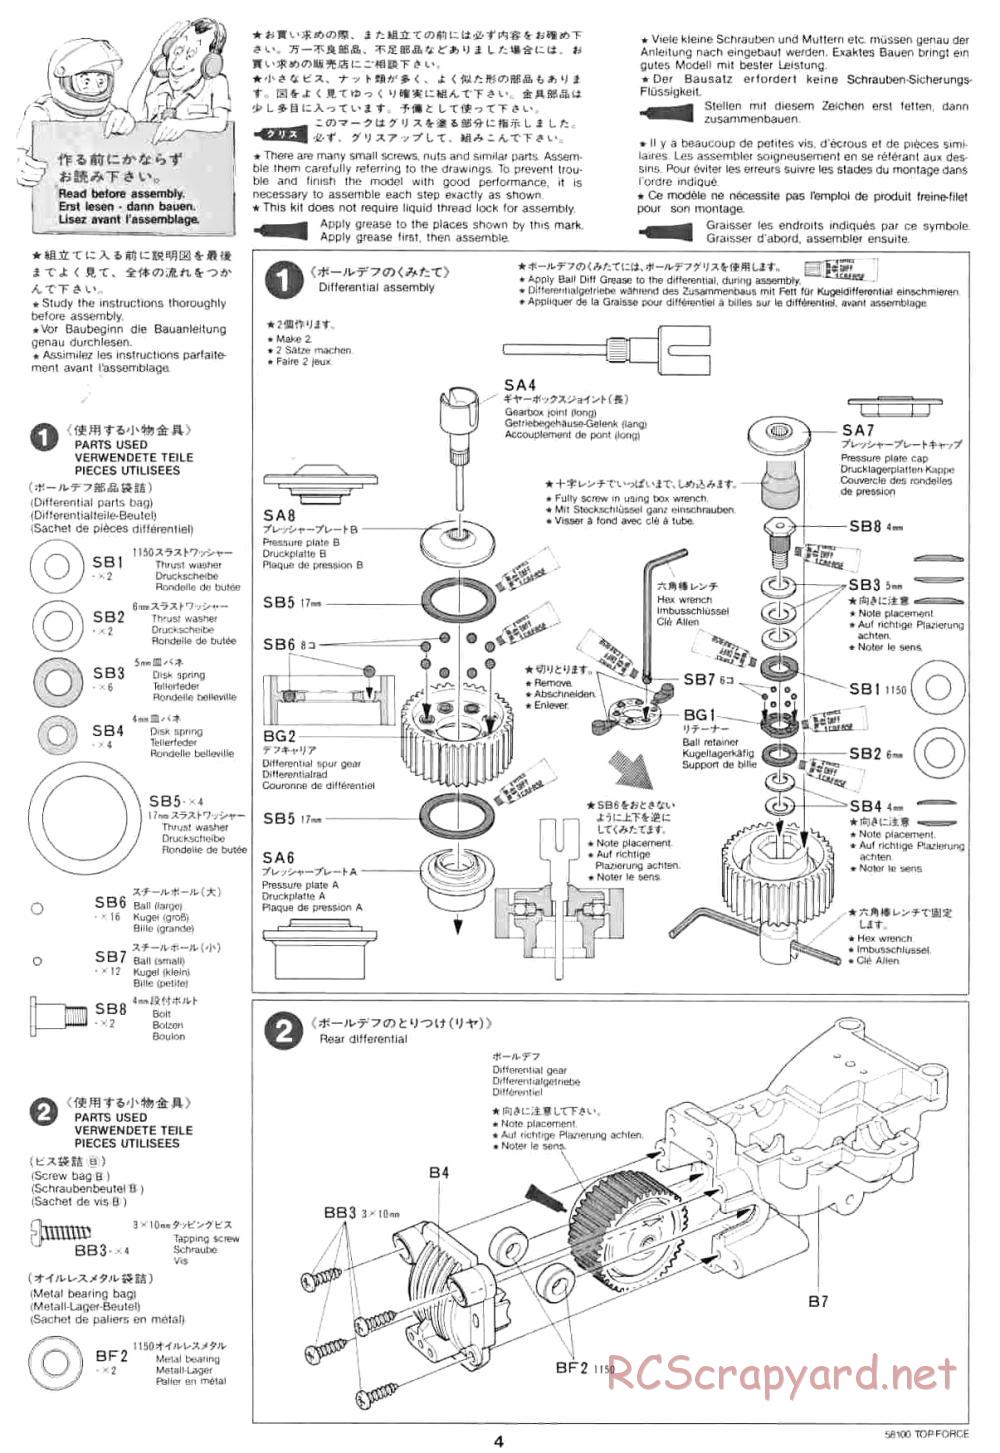 Tamiya - Top Force - 58100 - Manual - Page 4